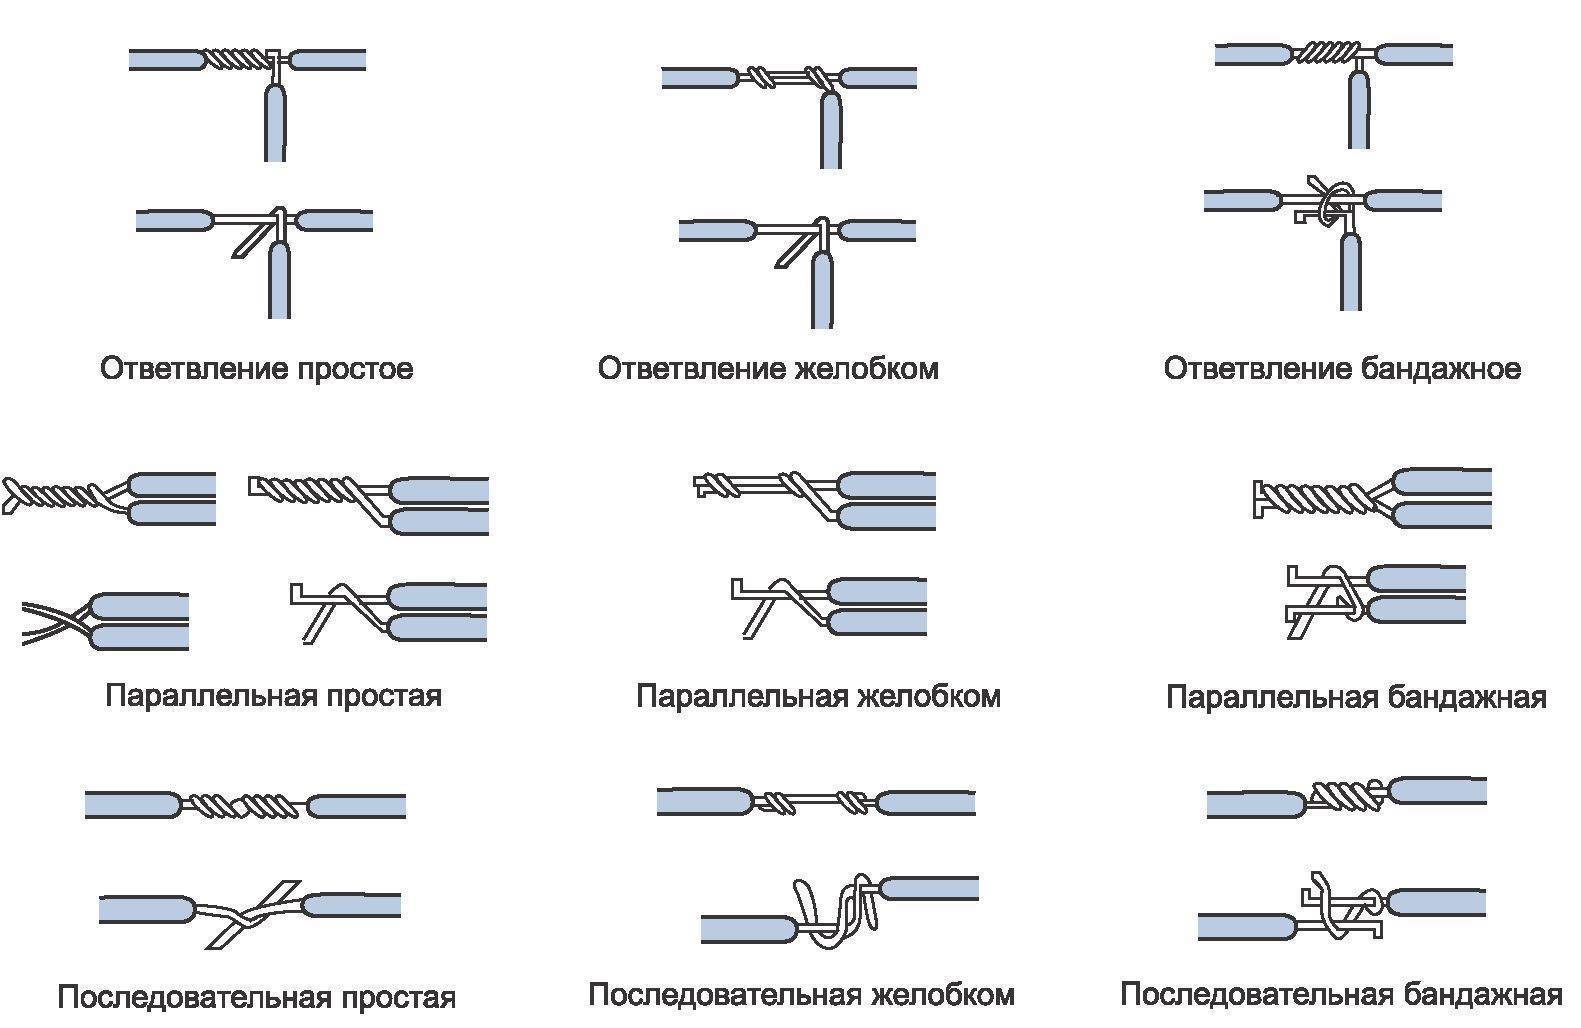 Семь способов соединения проводов